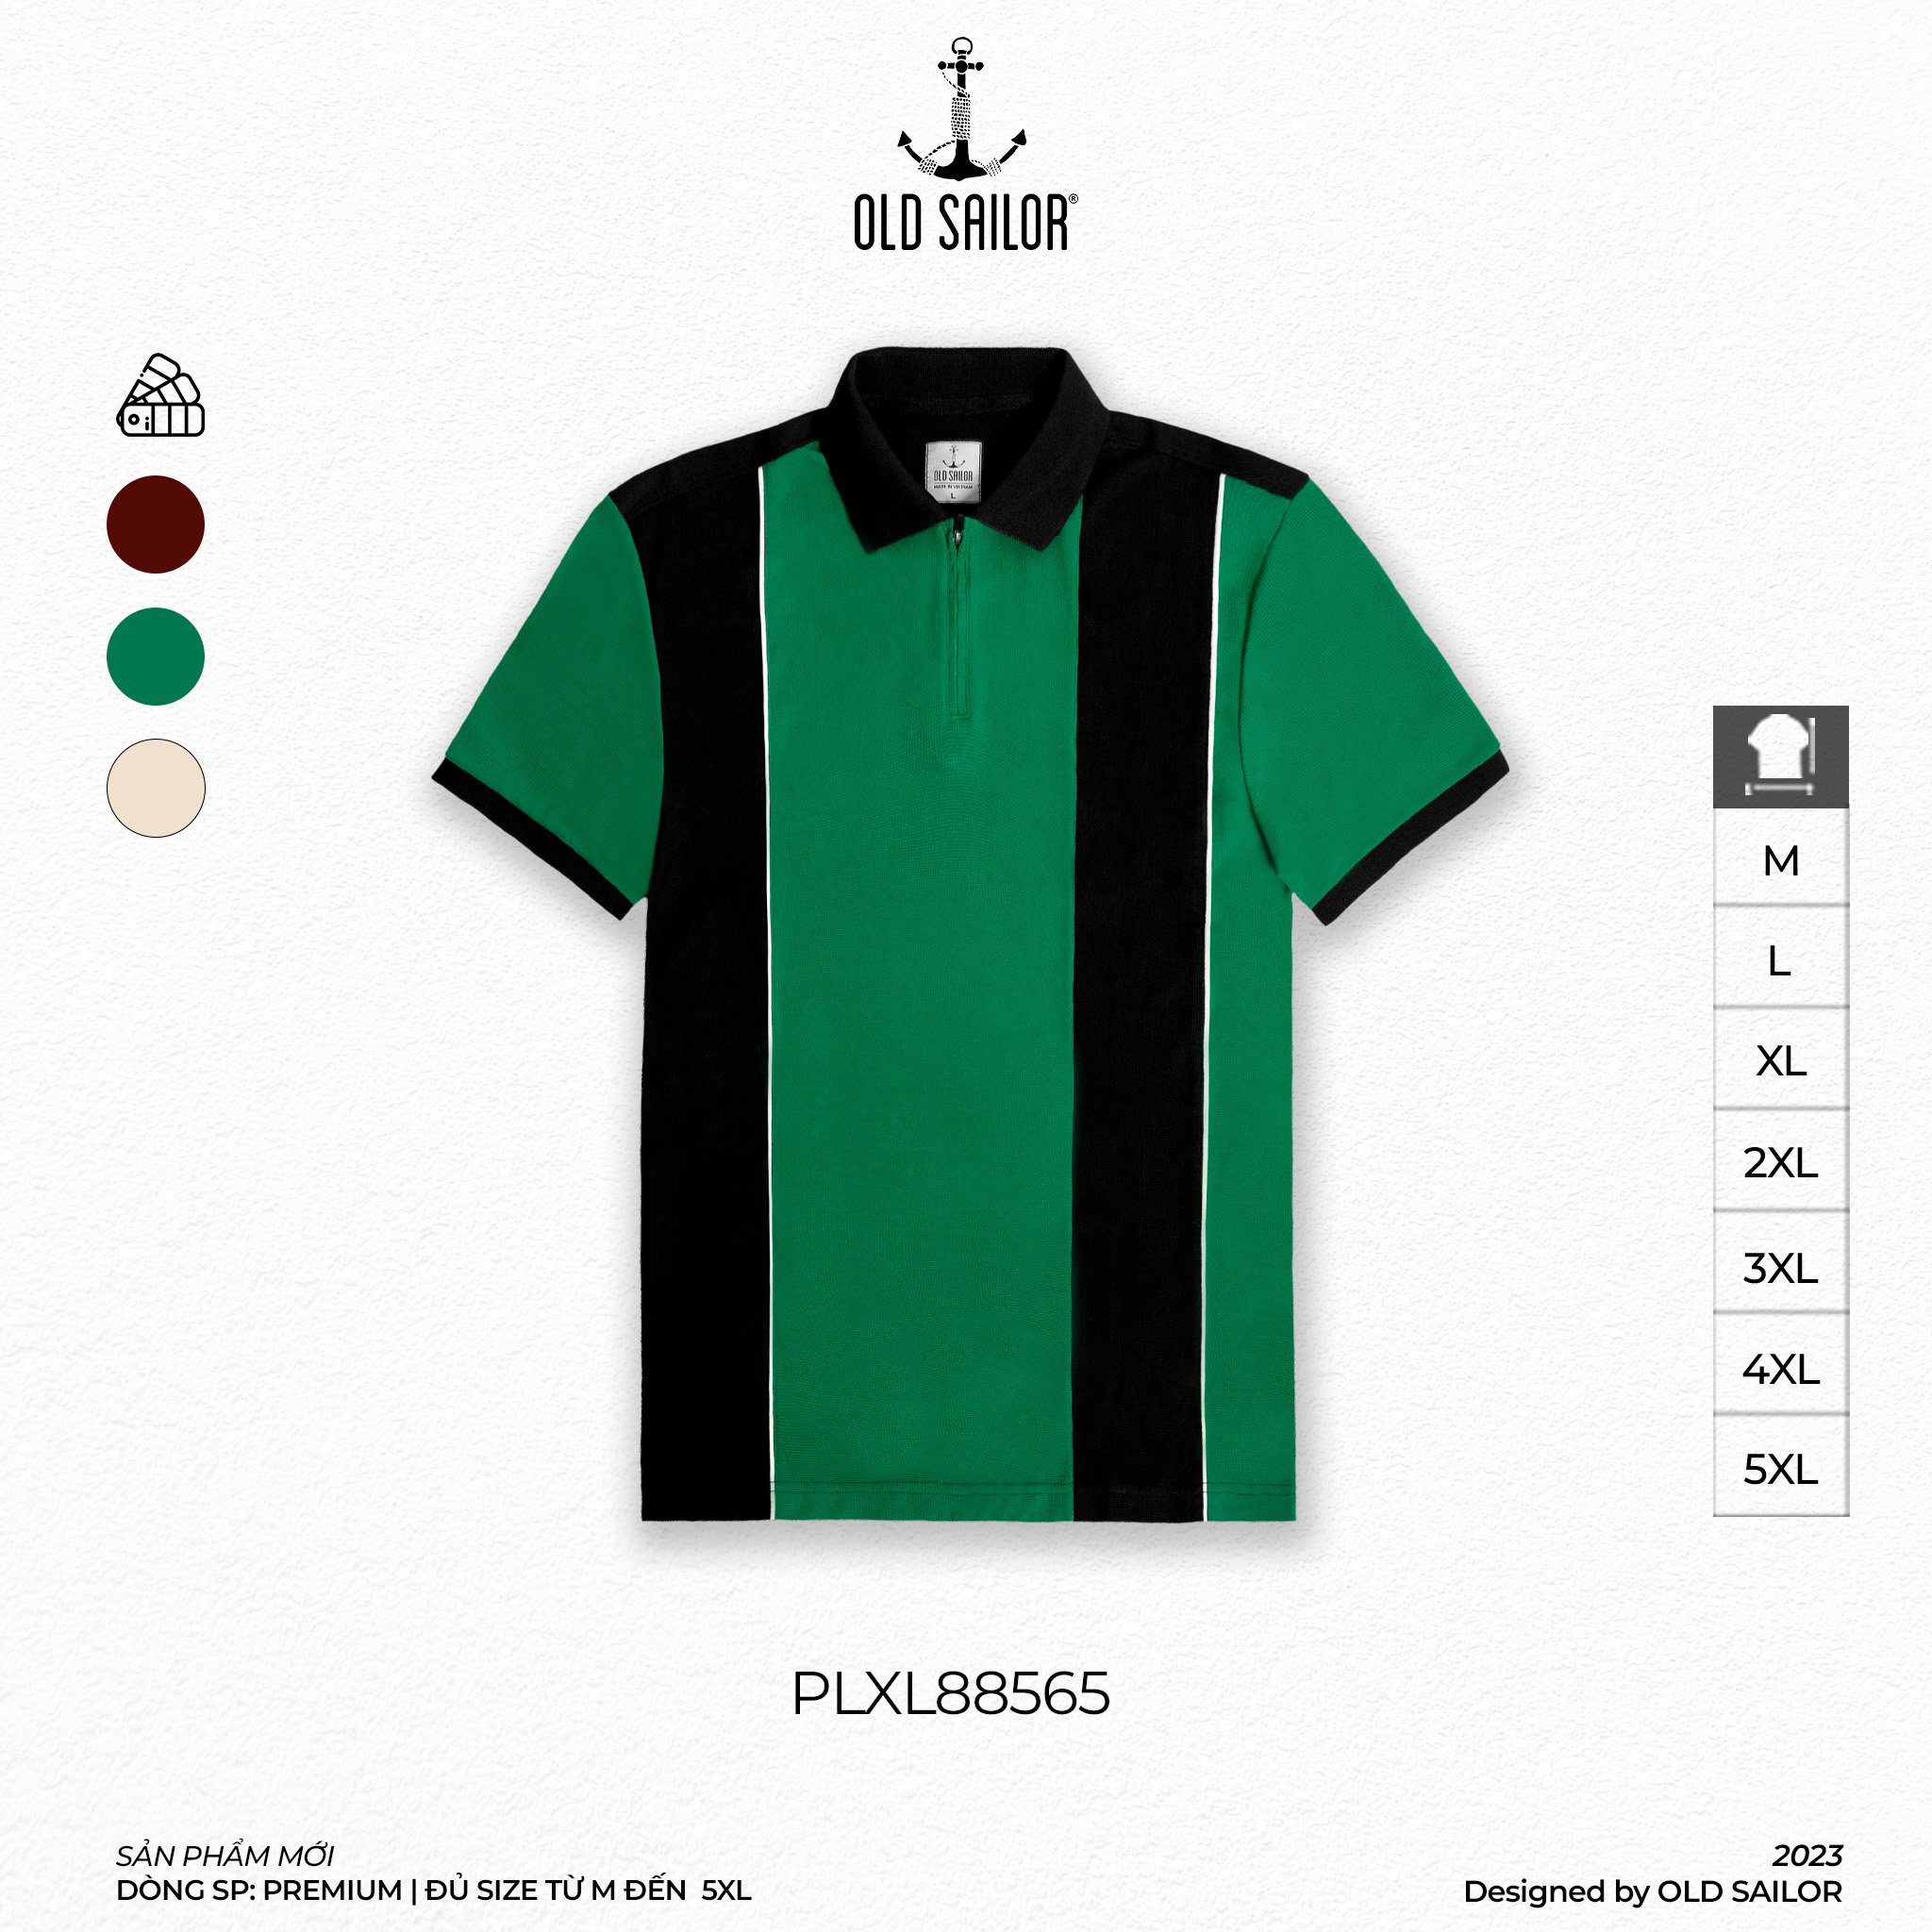 Áo polo 3-bar stripe Old Saillor - Green - PLXL88565 - xanh lá - Big size upto 5XL